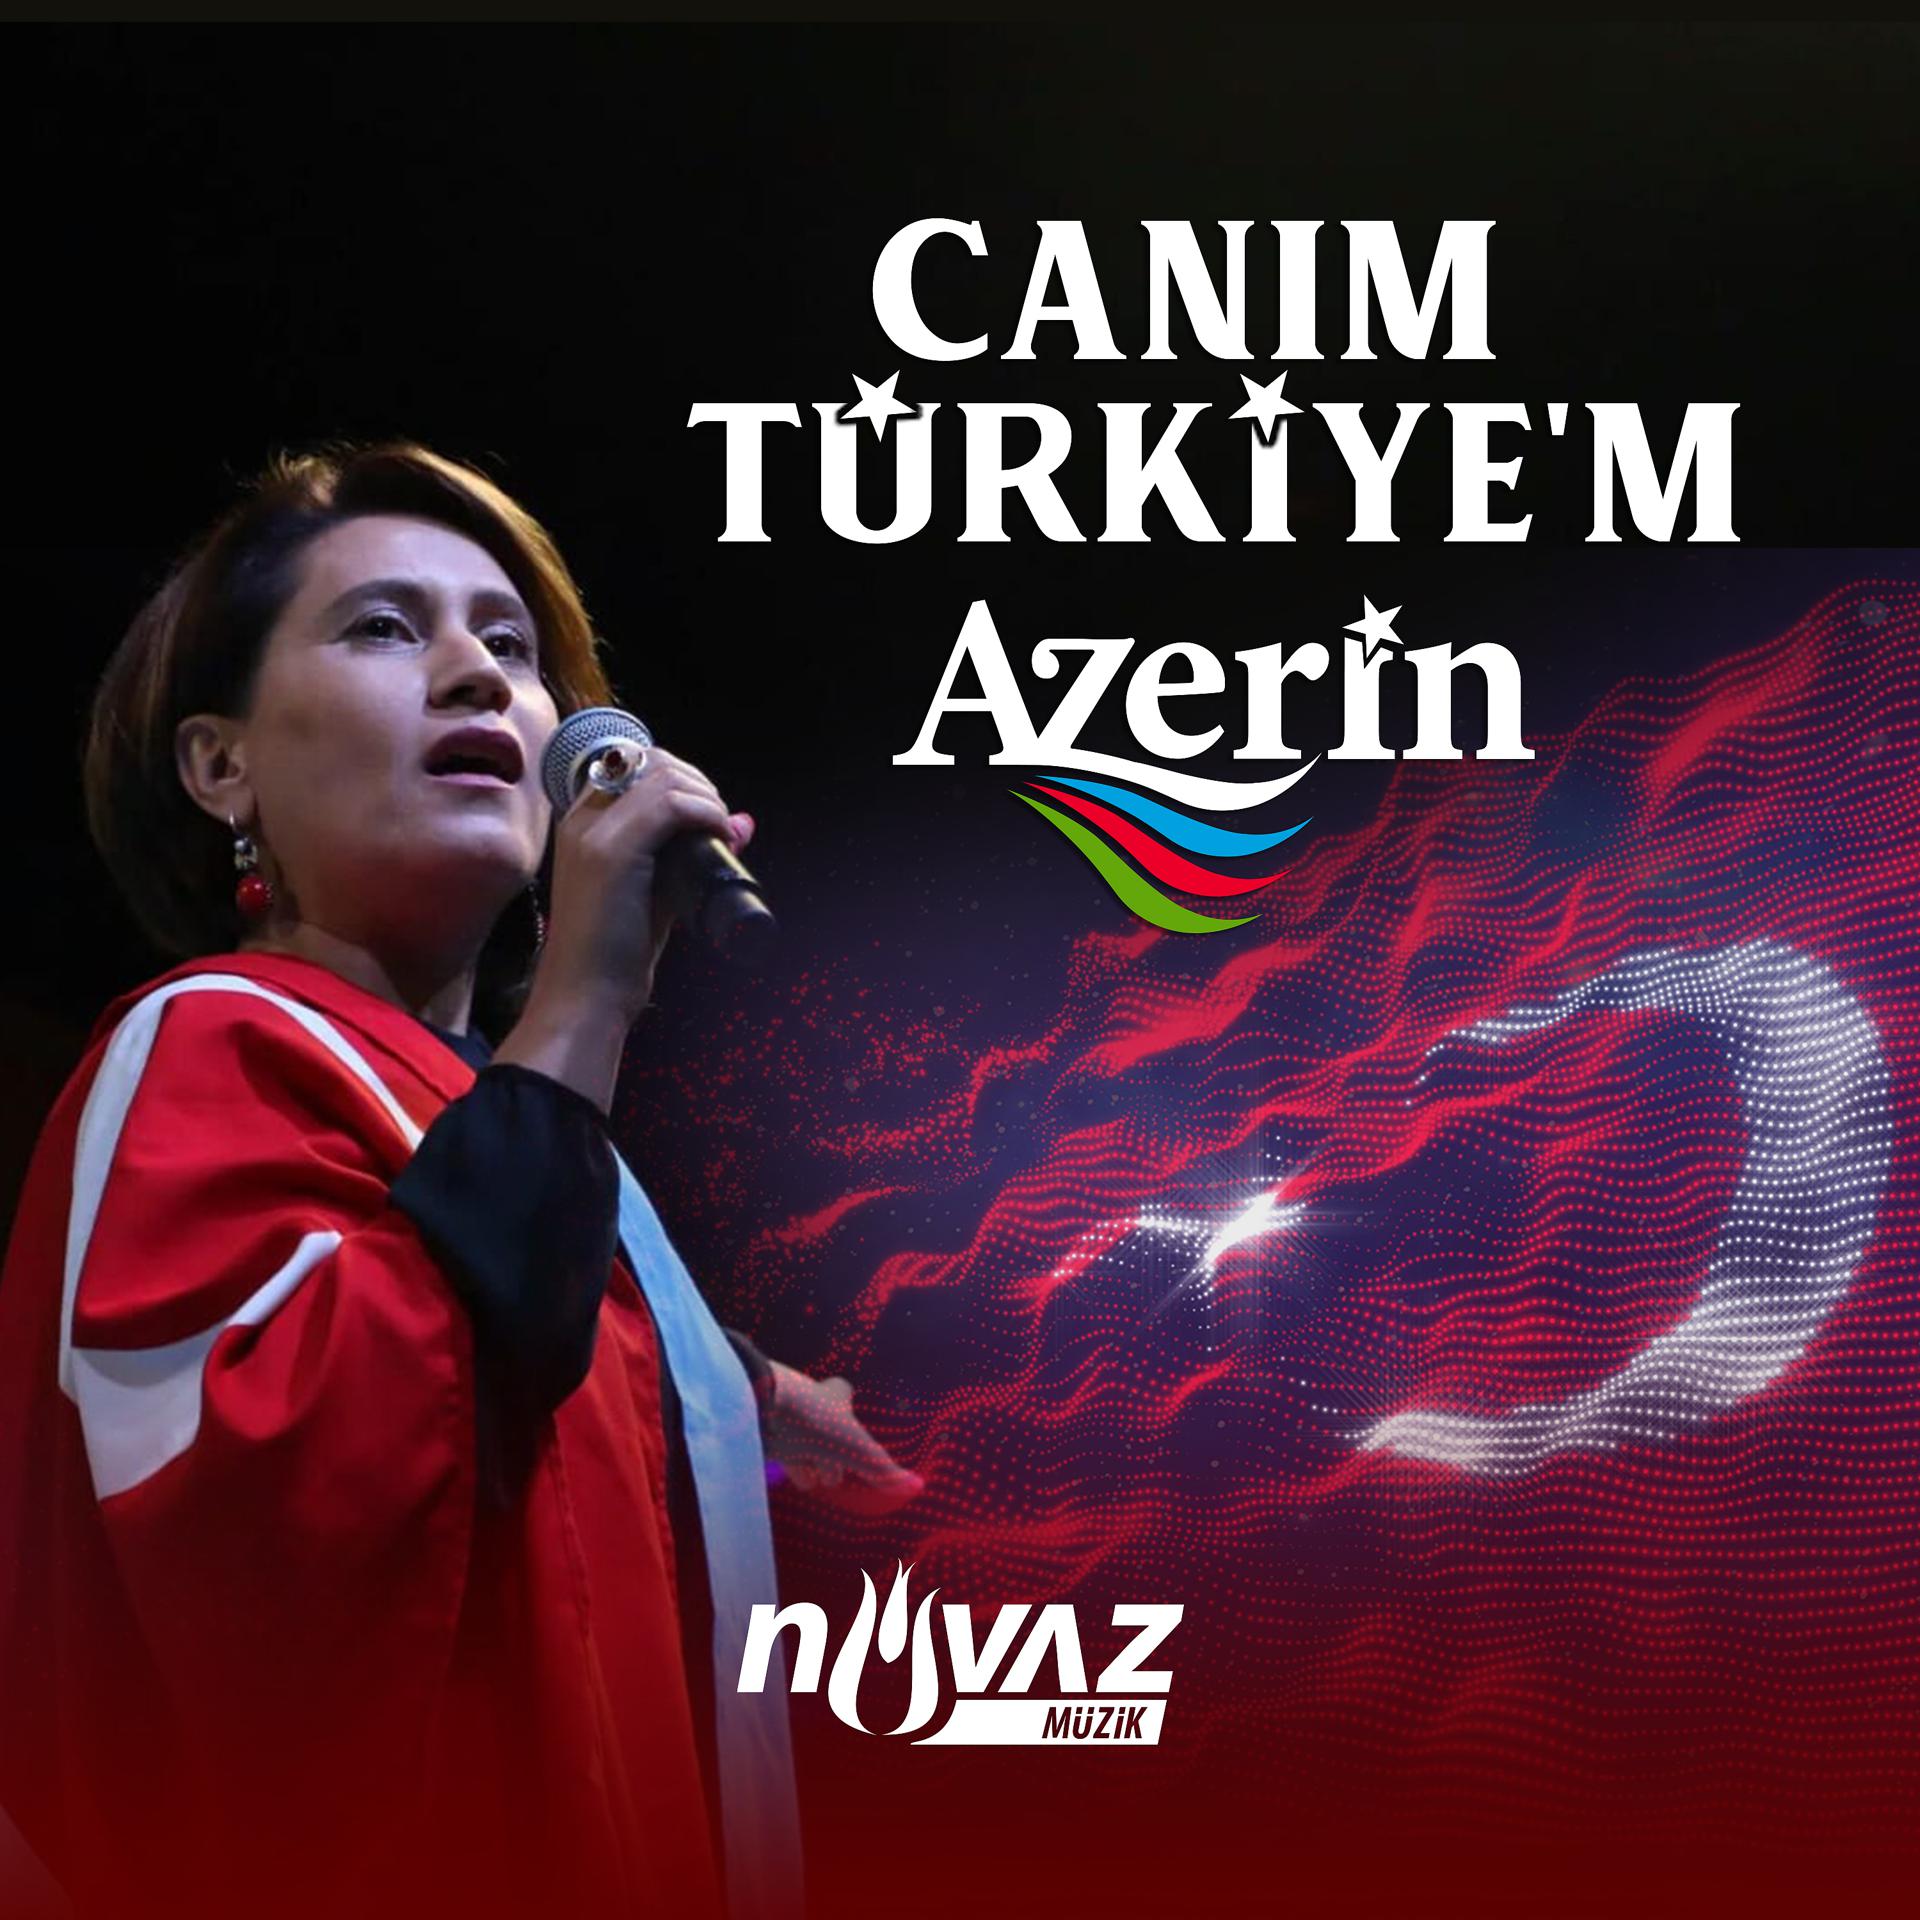 Постер альбома Canım Türkiye'm